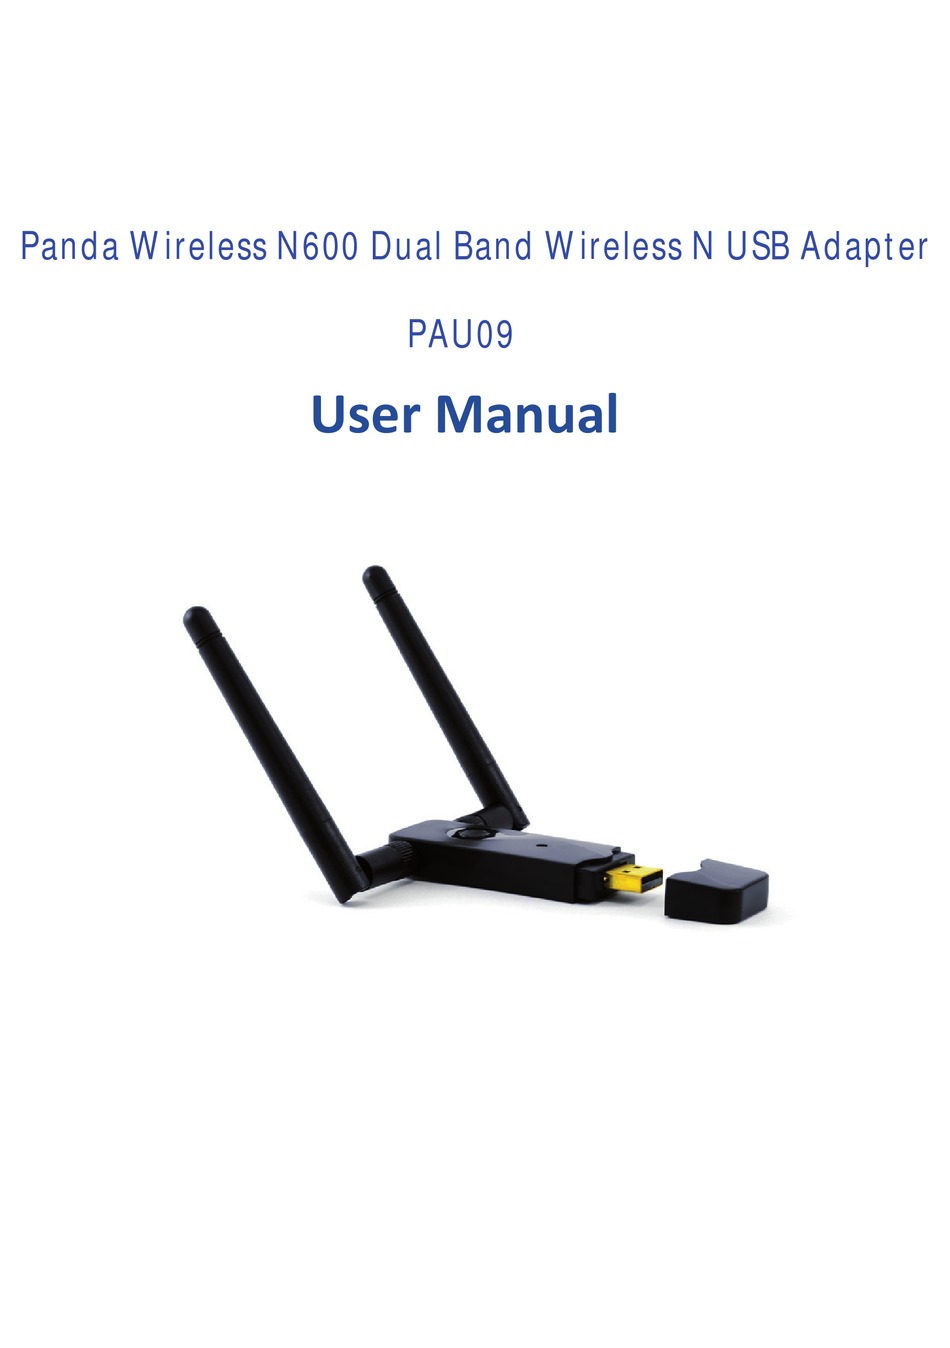 panda wireless pau09 ubuntu loses internet